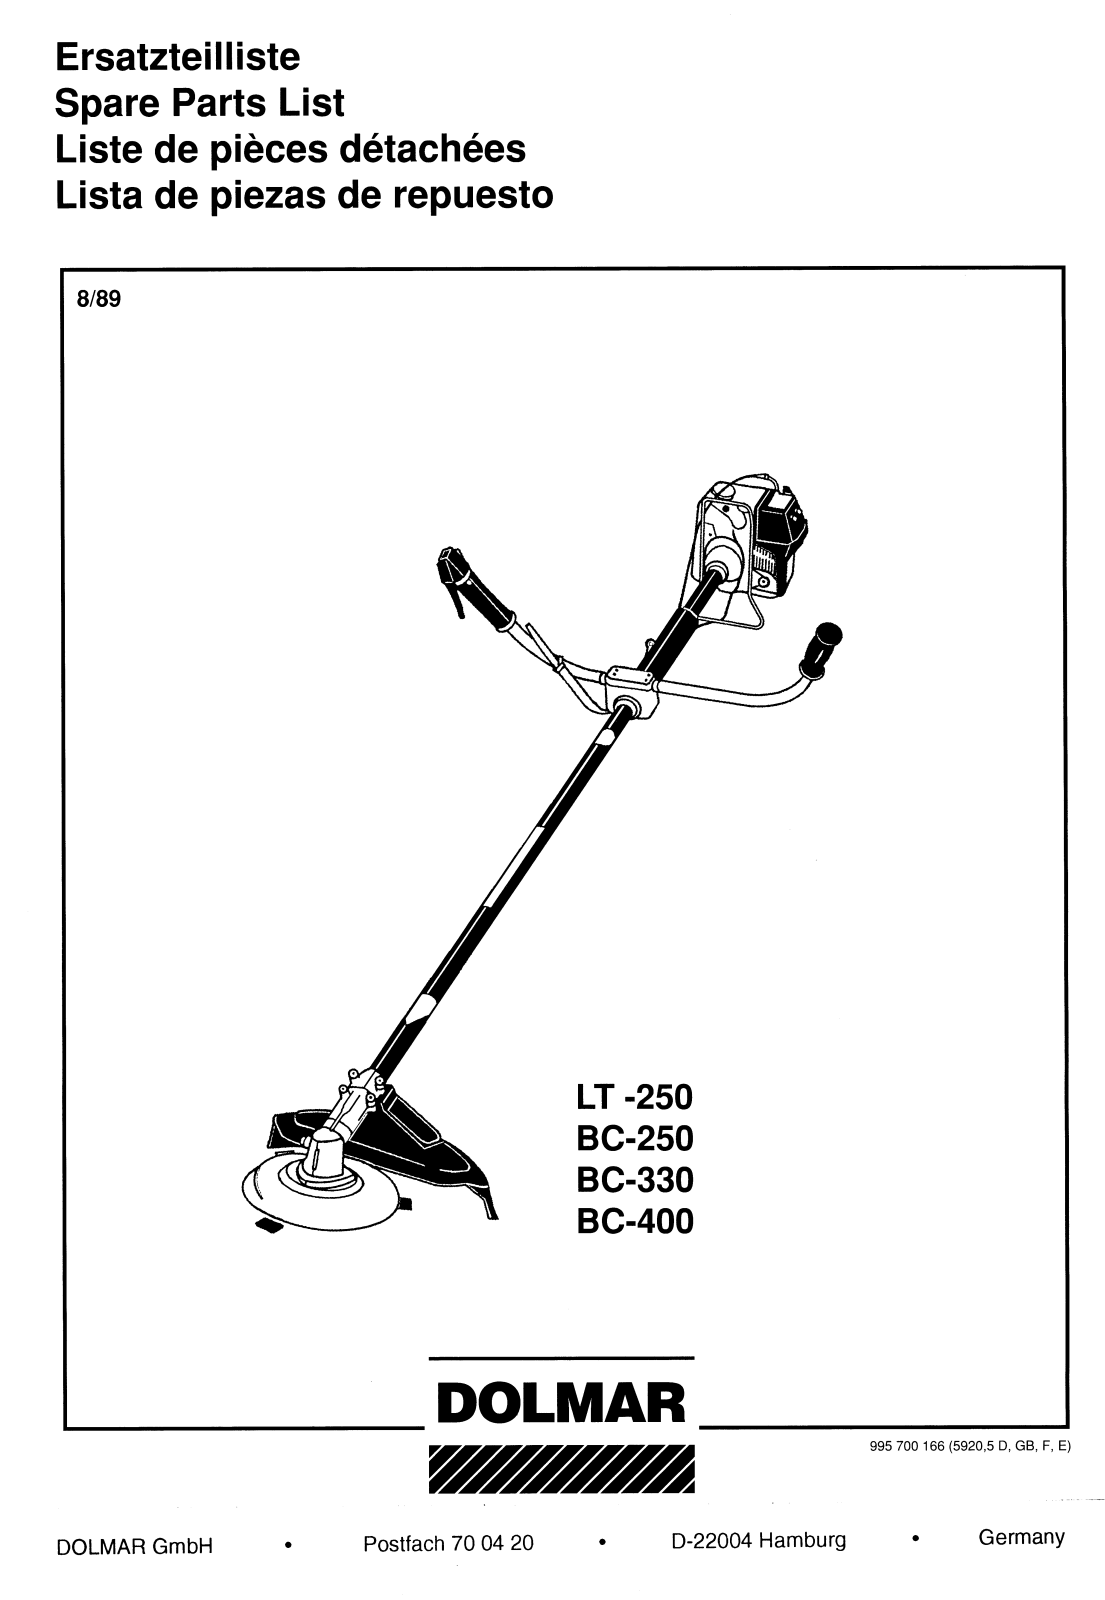 Dolmar LT-250, BC-330, BC-400 Spare Parts List